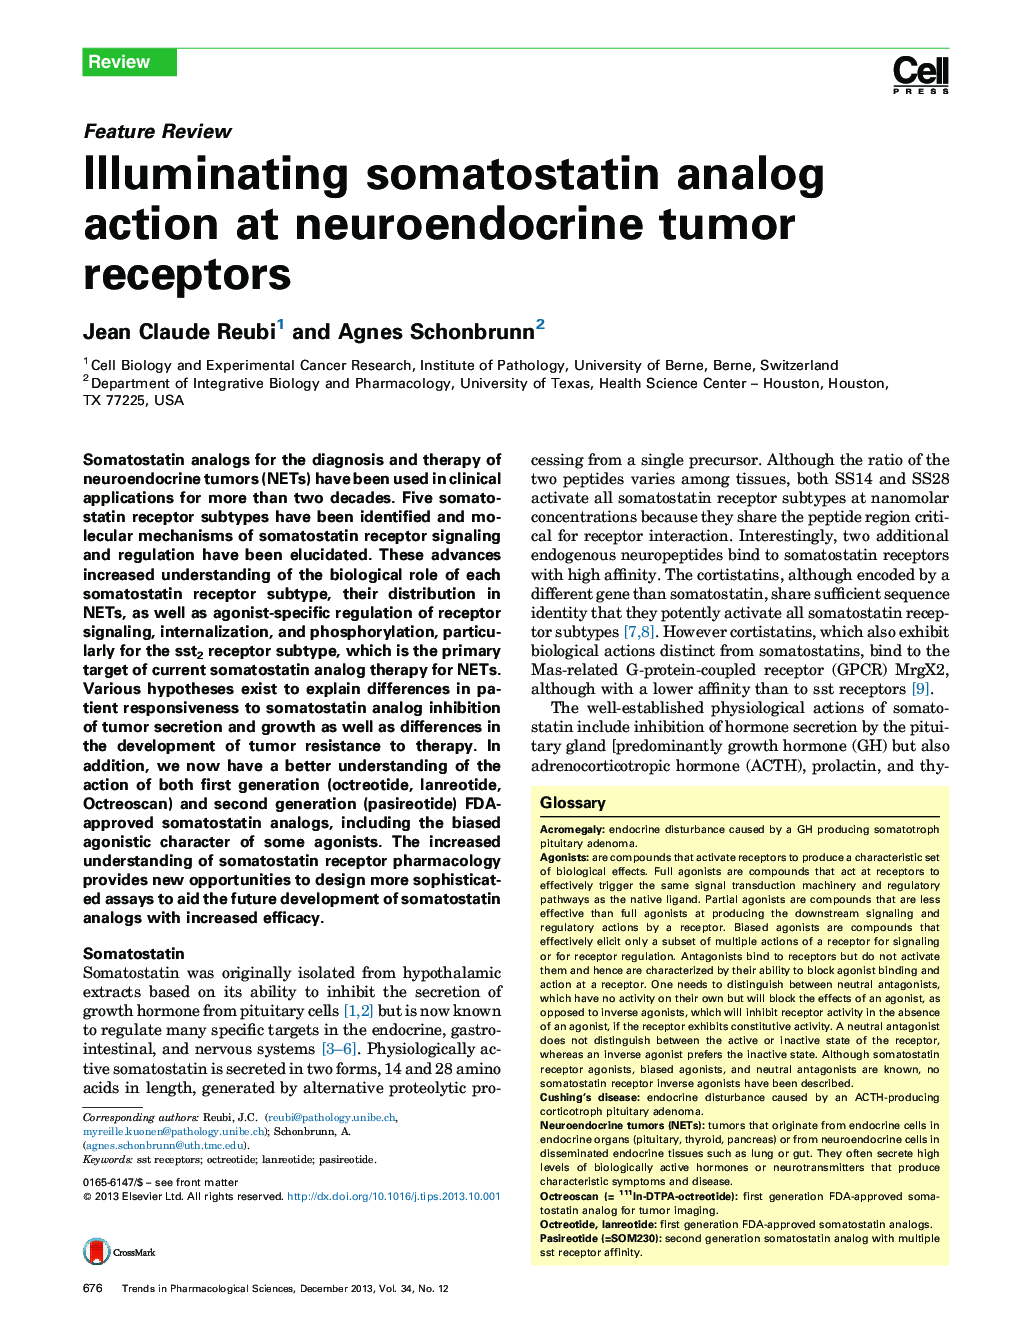 Illuminating somatostatin analog action at neuroendocrine tumor receptors